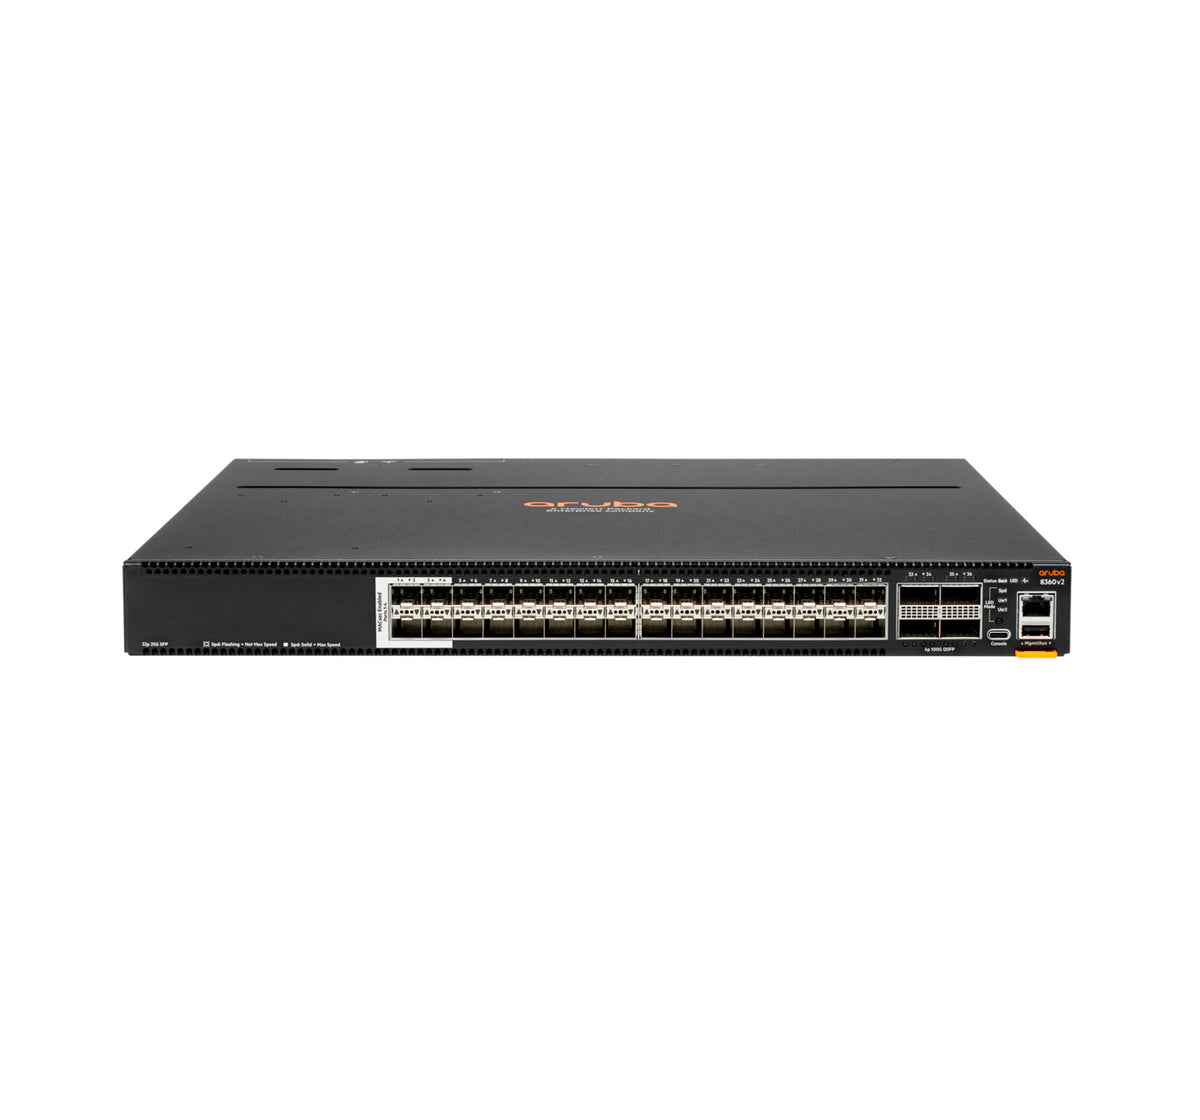 JL700C - Hewlett Packard Enterprise - Aruba 8360-32Y4C v2 Managed L3 1U